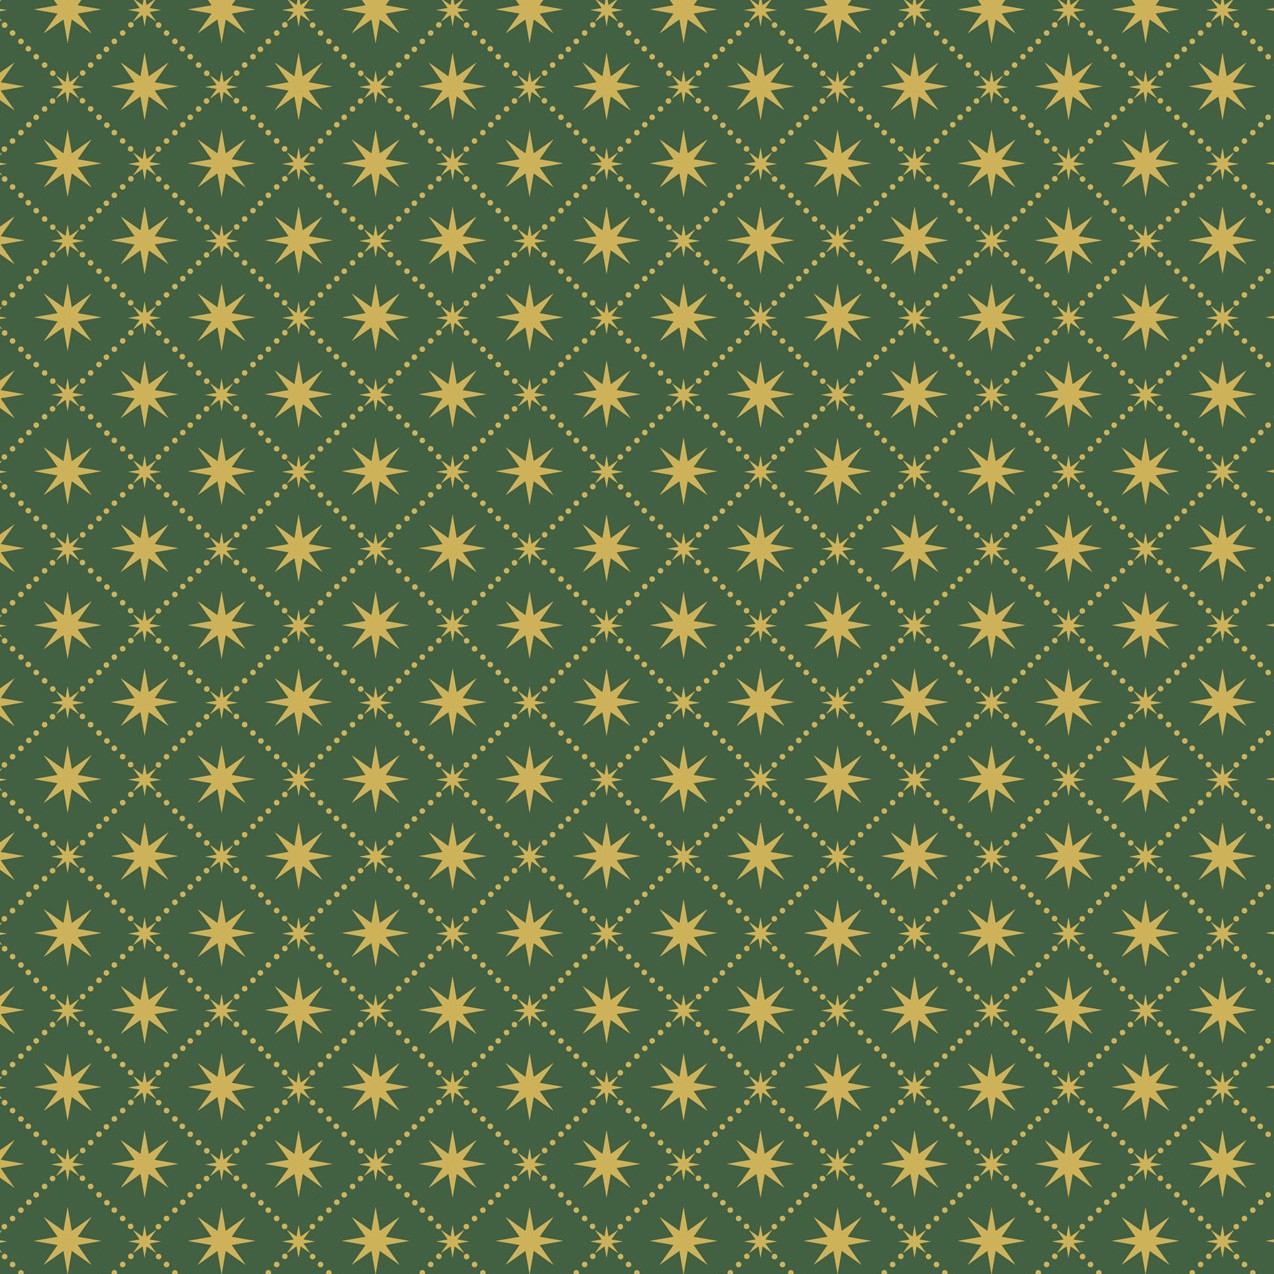 Yuletide (Lewis & Irene) - Gold Metallic Stars Green